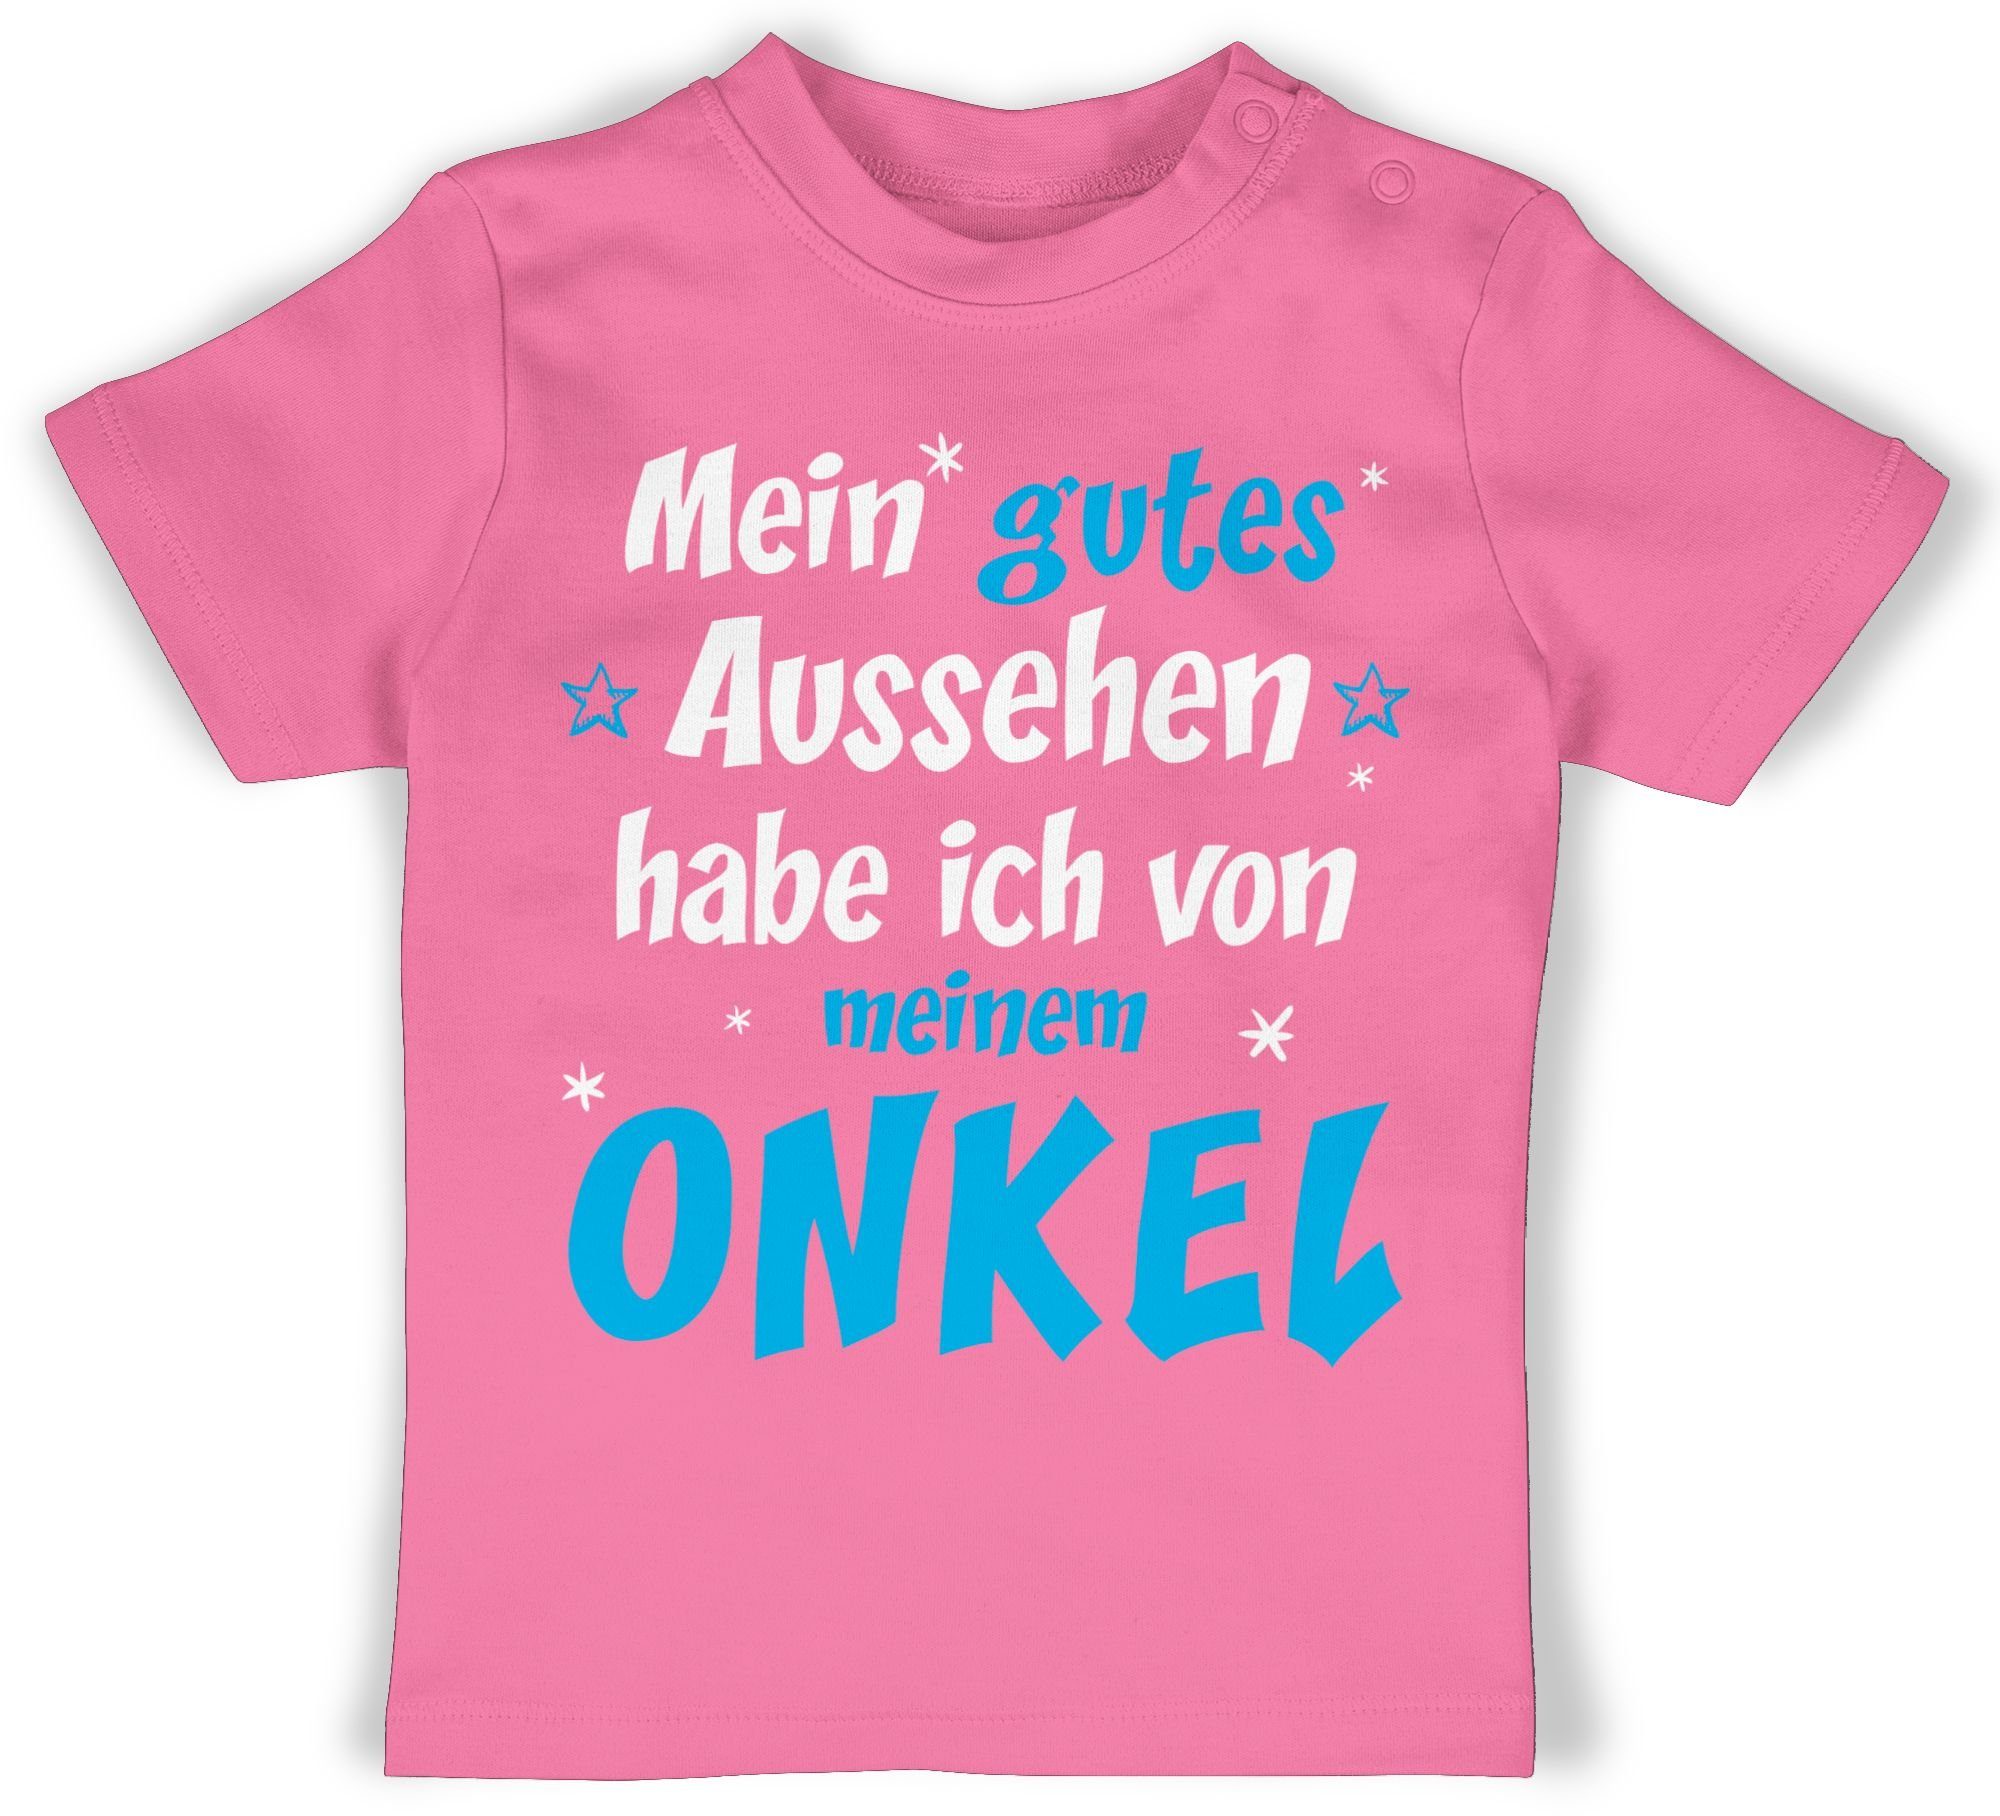 2 Onkel meinem habe von gutes T-Shirt Shirtracer - ONKEL Sprüche Pink ich Spruch Mein Baby Aussehen